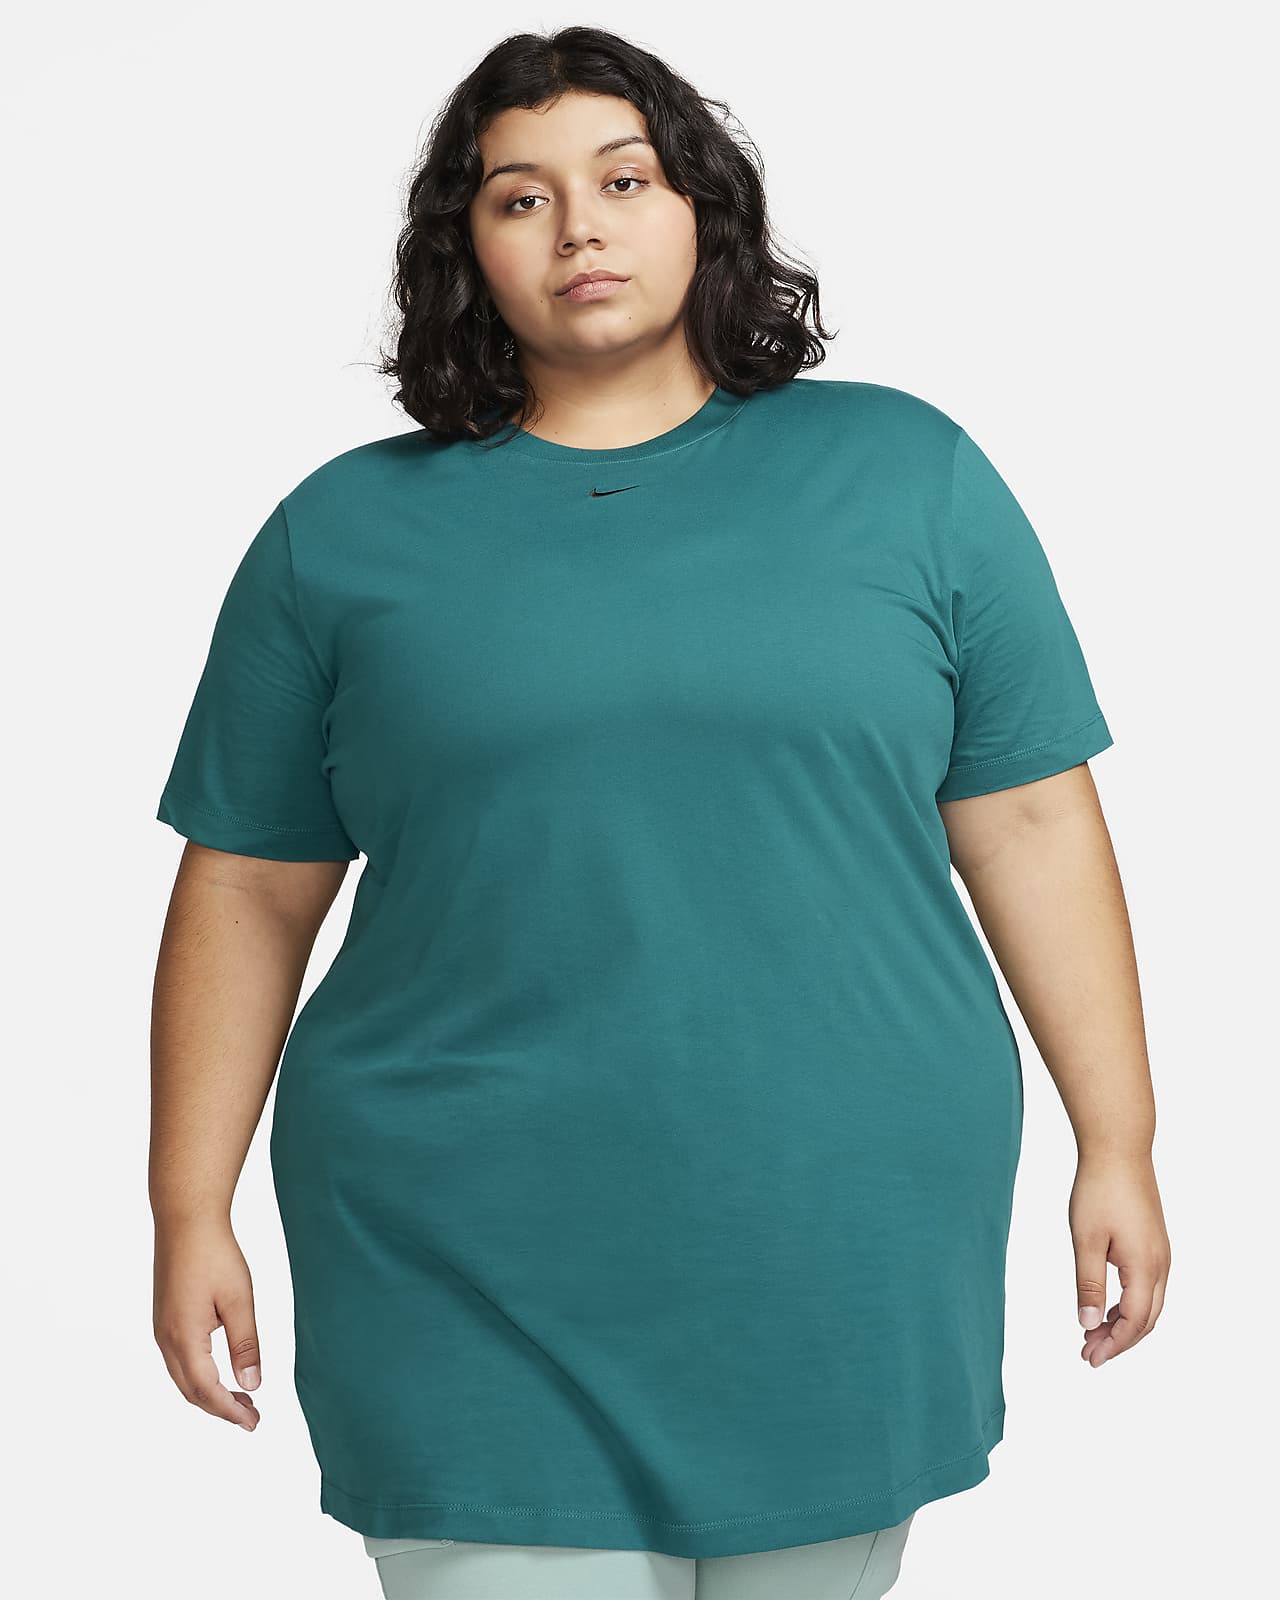 Nike Sportswear Essential Women's Short-Sleeve T-Shirt Dress (Plus